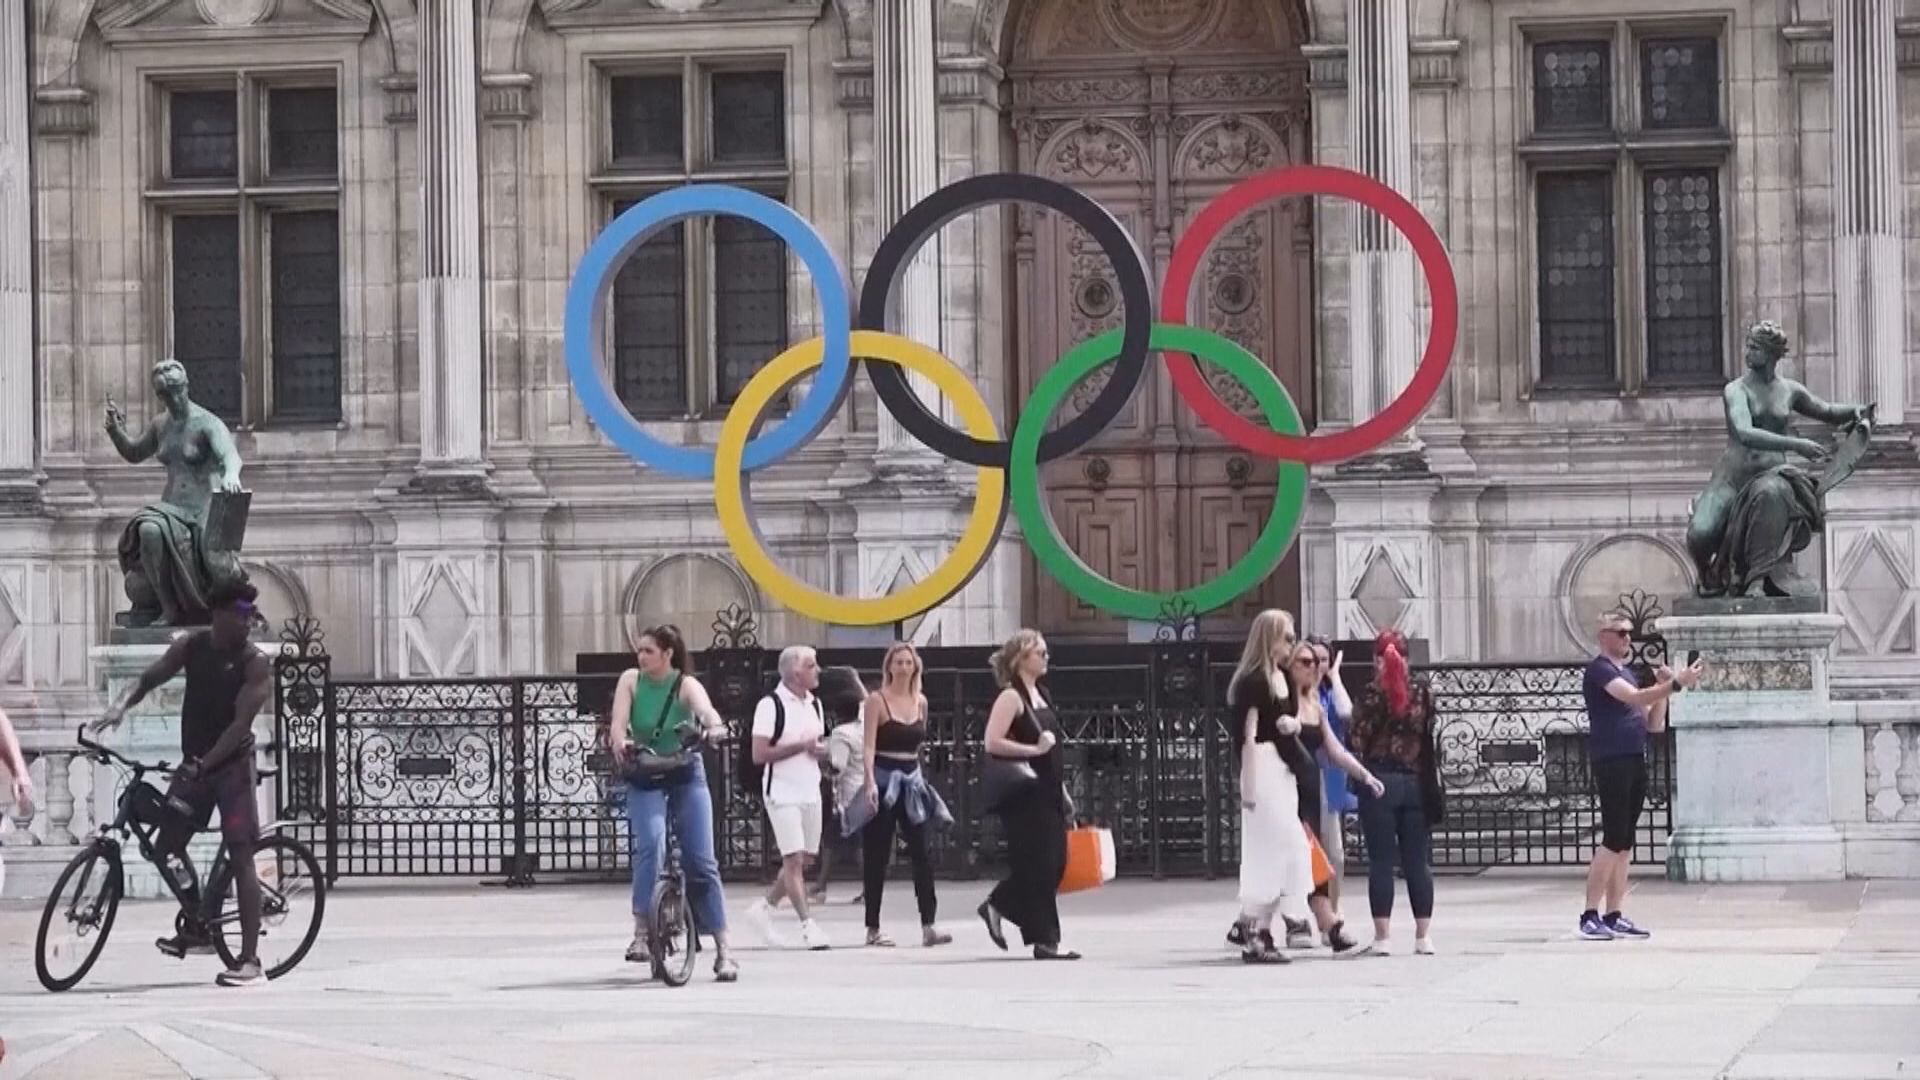 俄羅斯及白俄運動員不得參加巴黎奧運開幕禮選手亮相環節